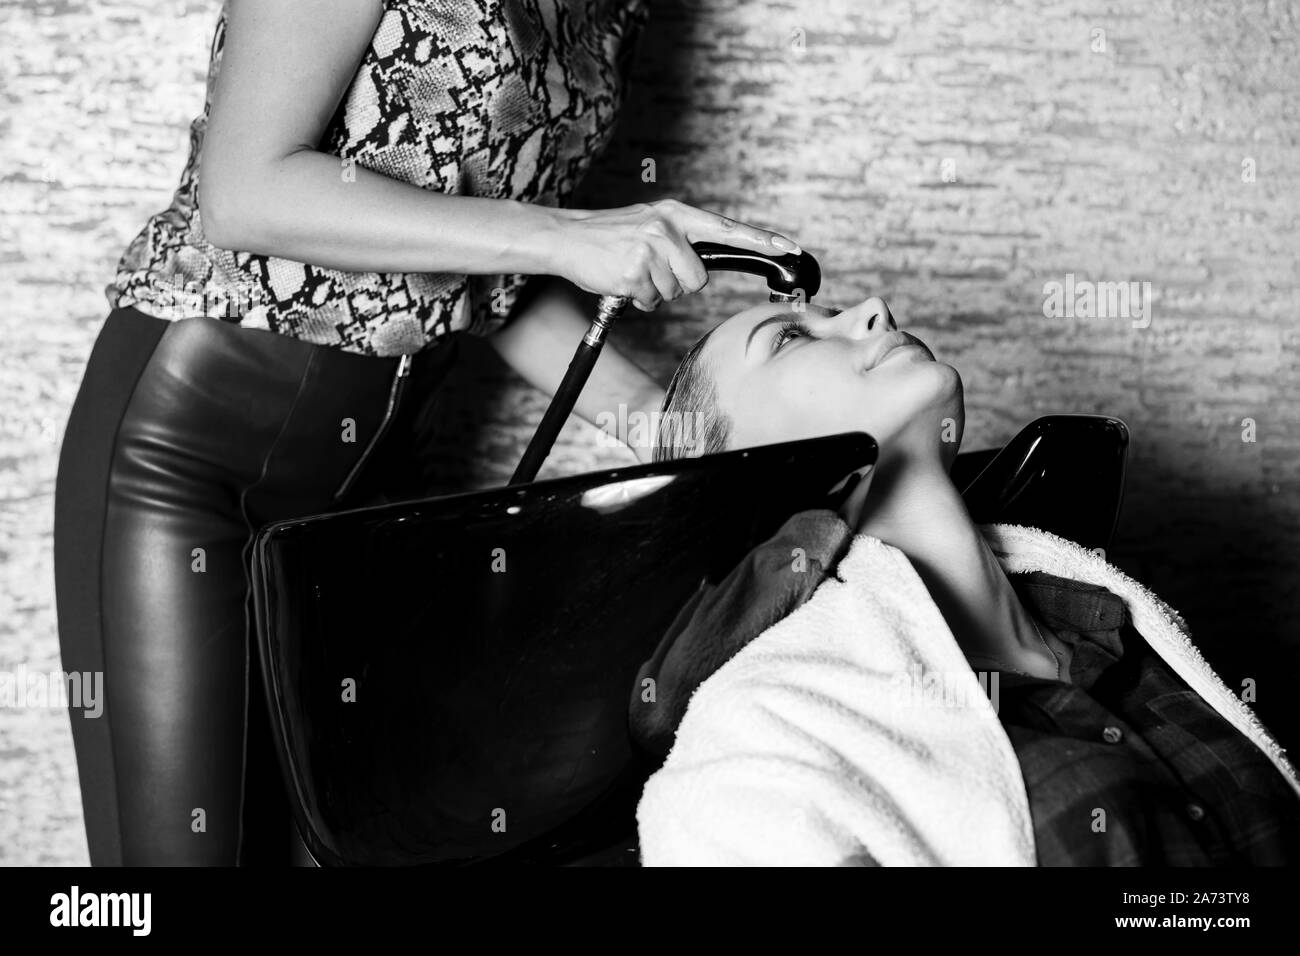 Libre d'un lavage des cheveux coiffure femme la fille blonde. Spa, beauté, soins, santé concepts. noir blanc photo Banque D'Images